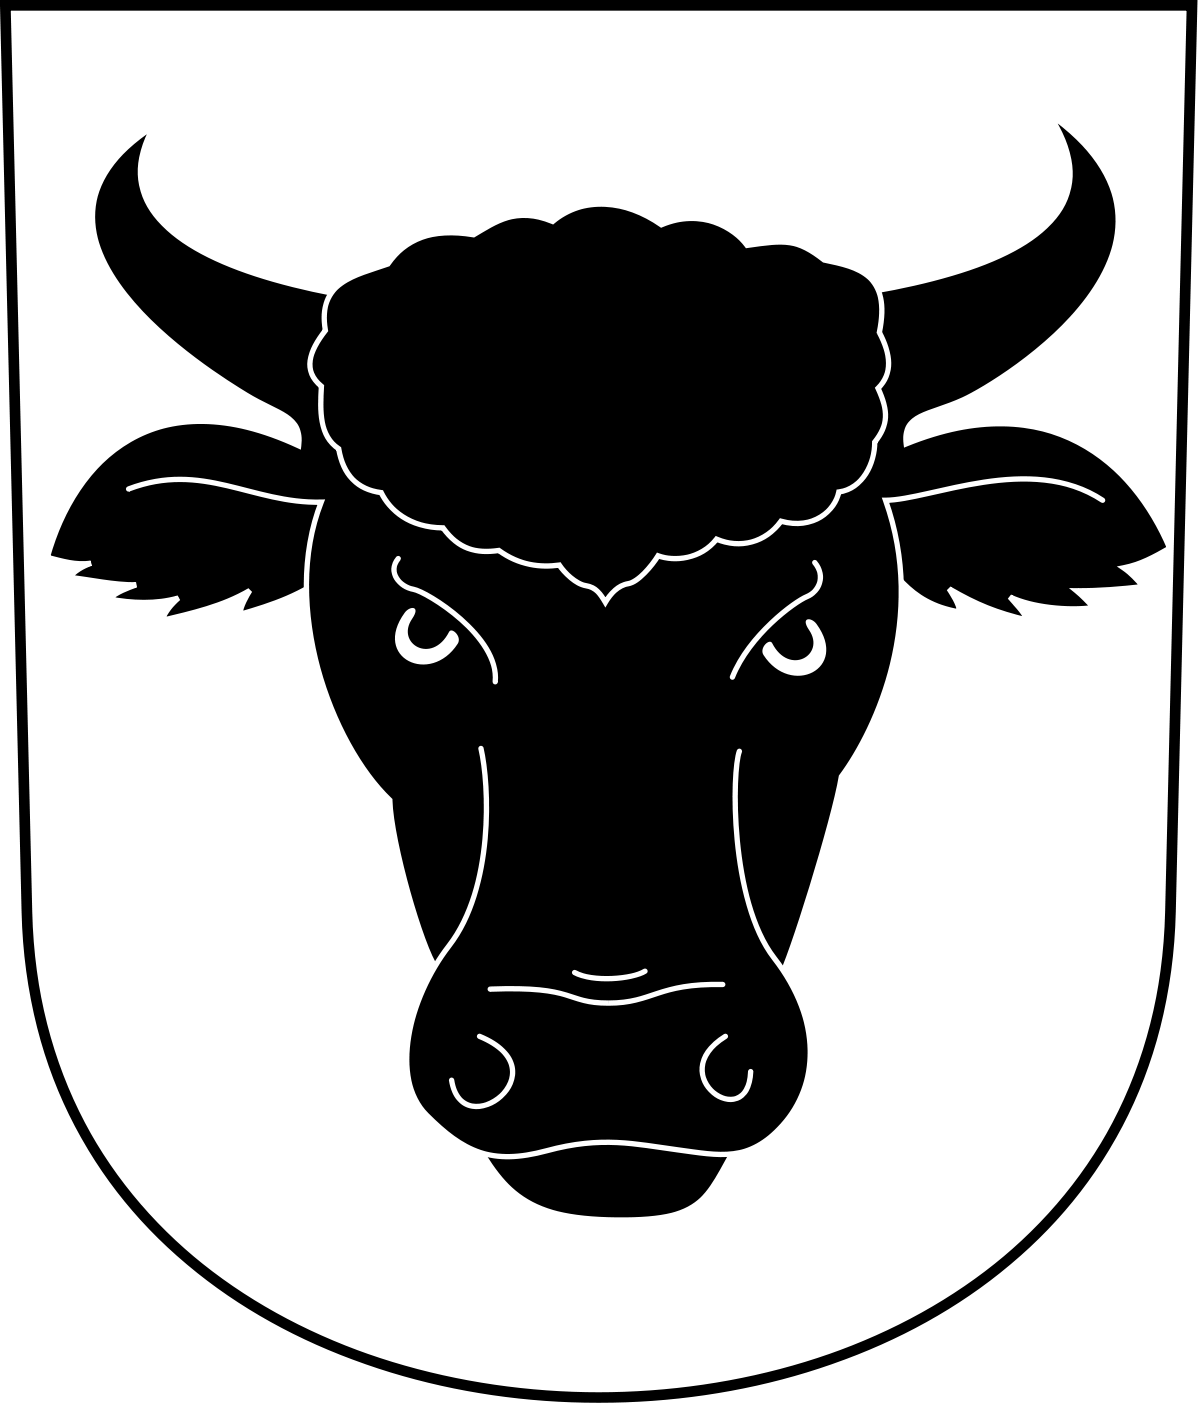 Wappen von Urdorf